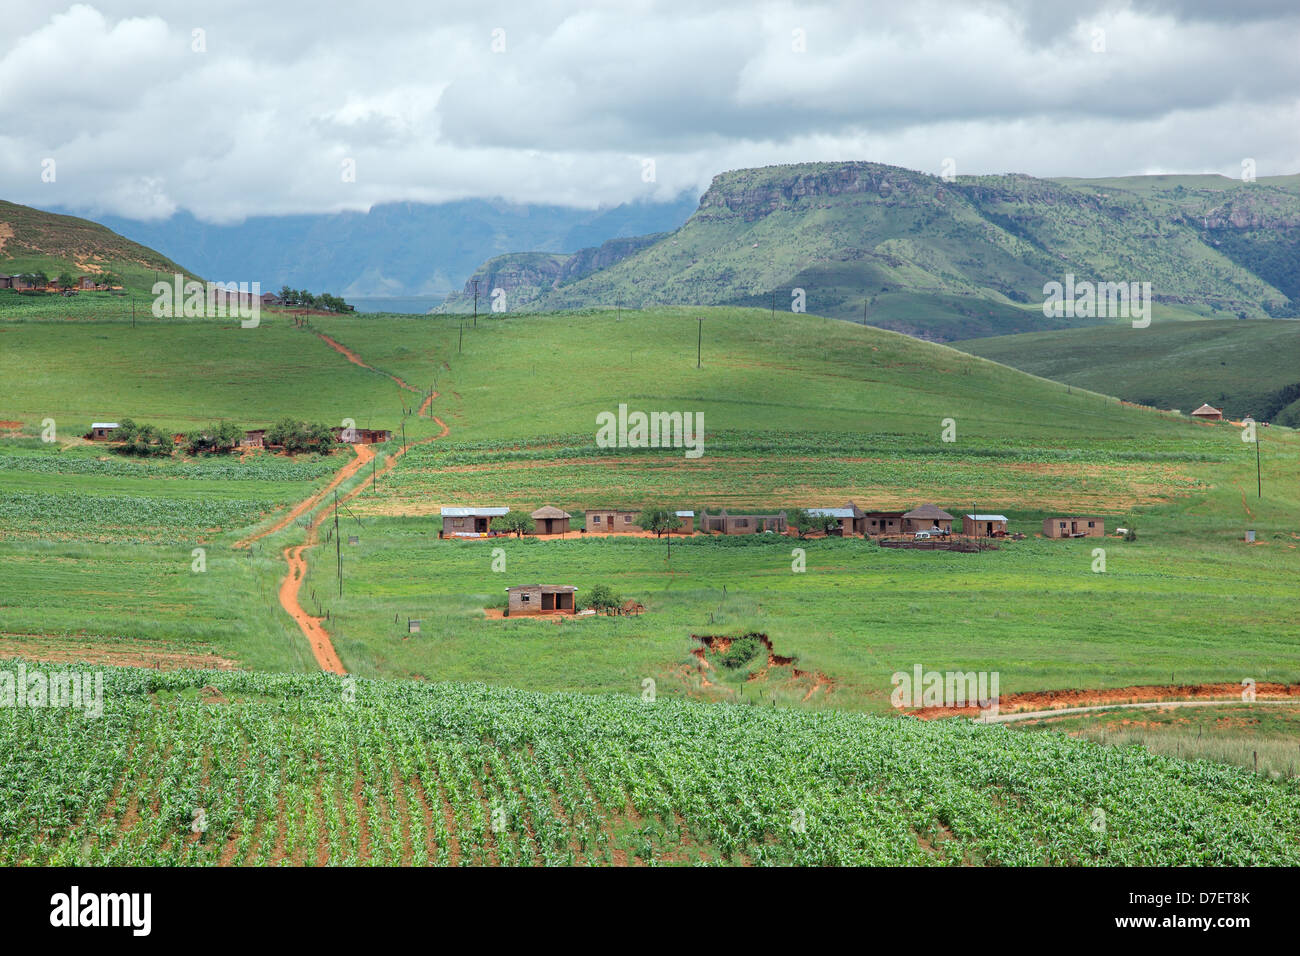 Ländliche Siedlung am Fuße der Drakensberge, KwaZulu-Natal, Südafrika Stockfoto